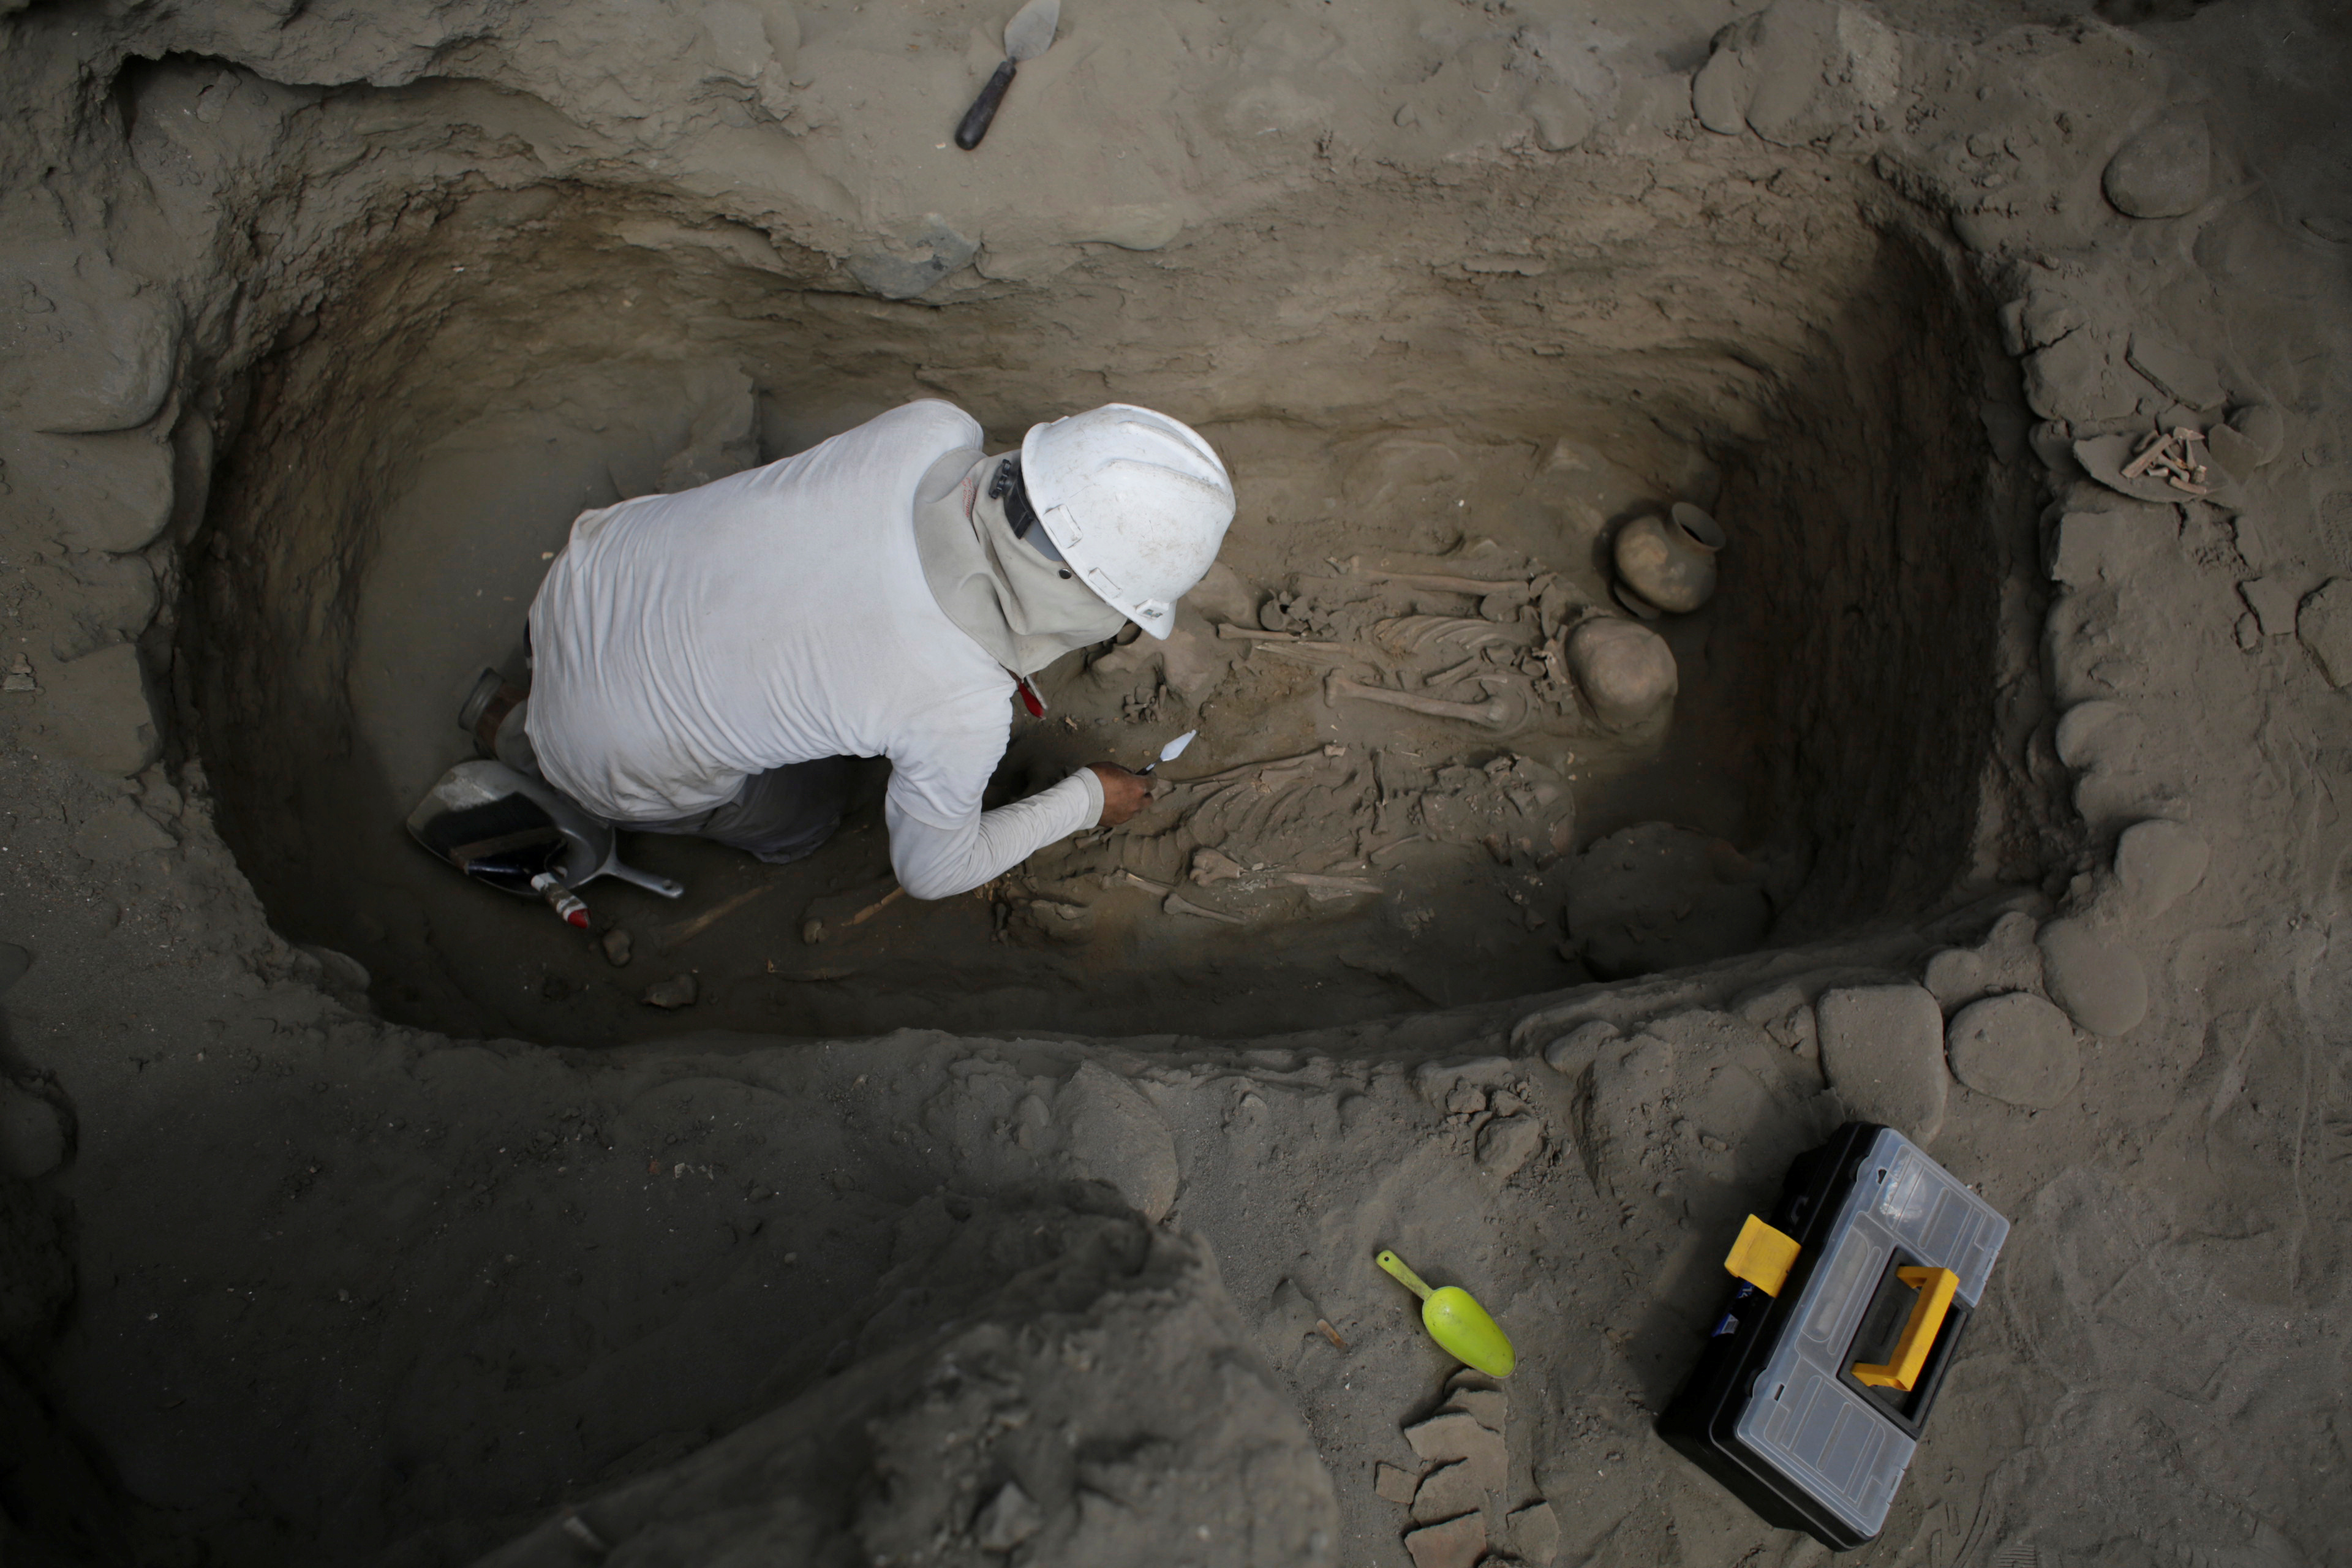 جانب من اكتشاف مقبرة بشرية تعود لحضارة تشيمو فى بيرو